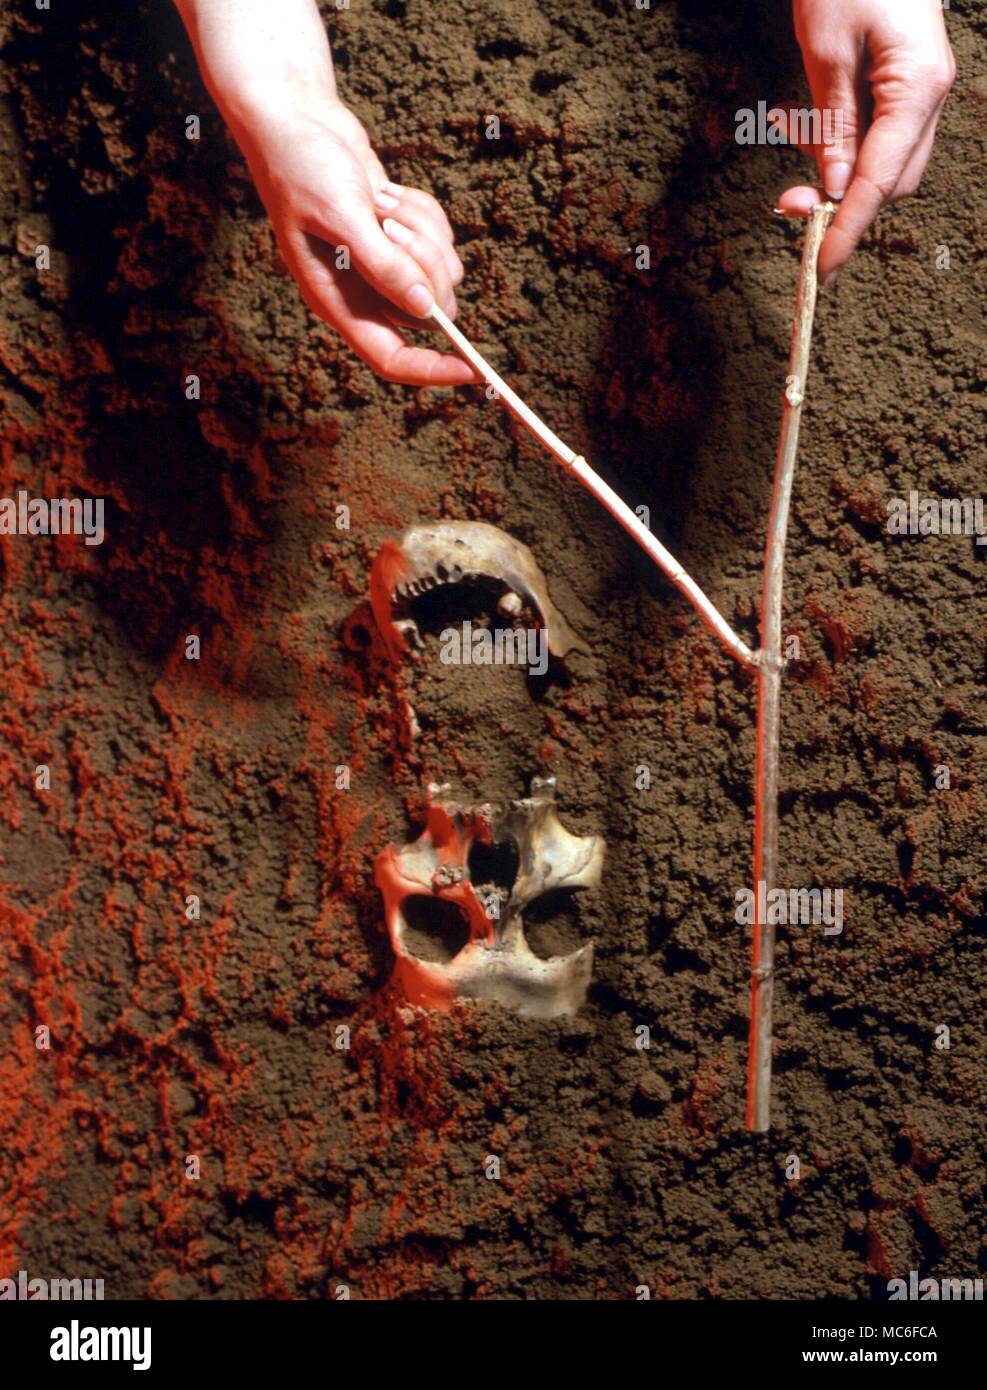 Rutengehen archäologische Rutengehen, um einen menschlichen Schädel im Sand. Rutengehen ist eine nützliche Technik für die Bestimmung der Art der Unter - Vergraben in solchen Fällen, vor dem Ausbau der bleibt Stockfoto